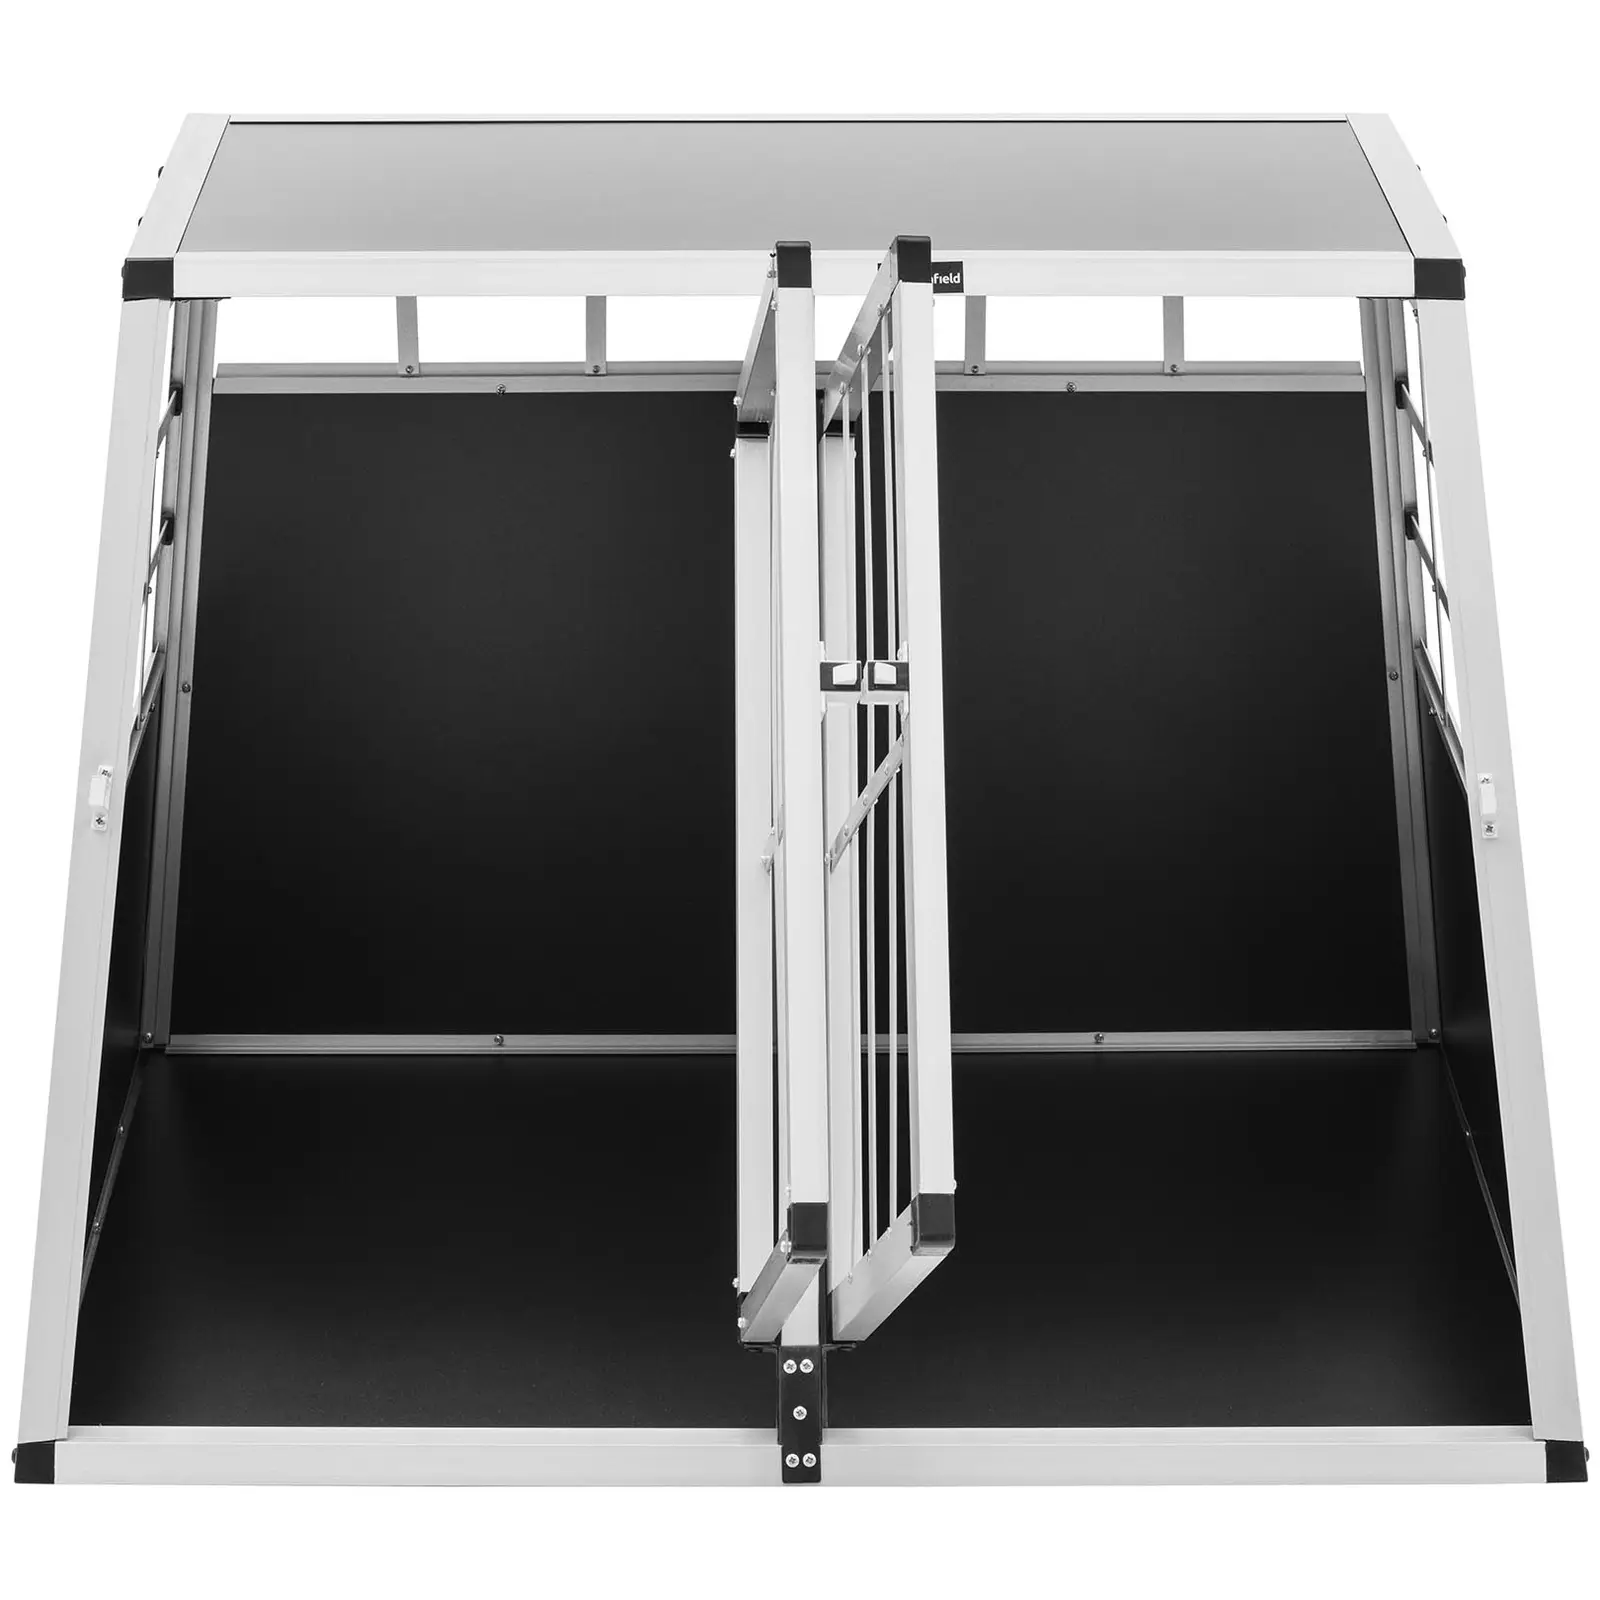 Hundtransportlåda - Aluminium - Trapetsform - 95 x 85 x 70 cm - Med avdelare